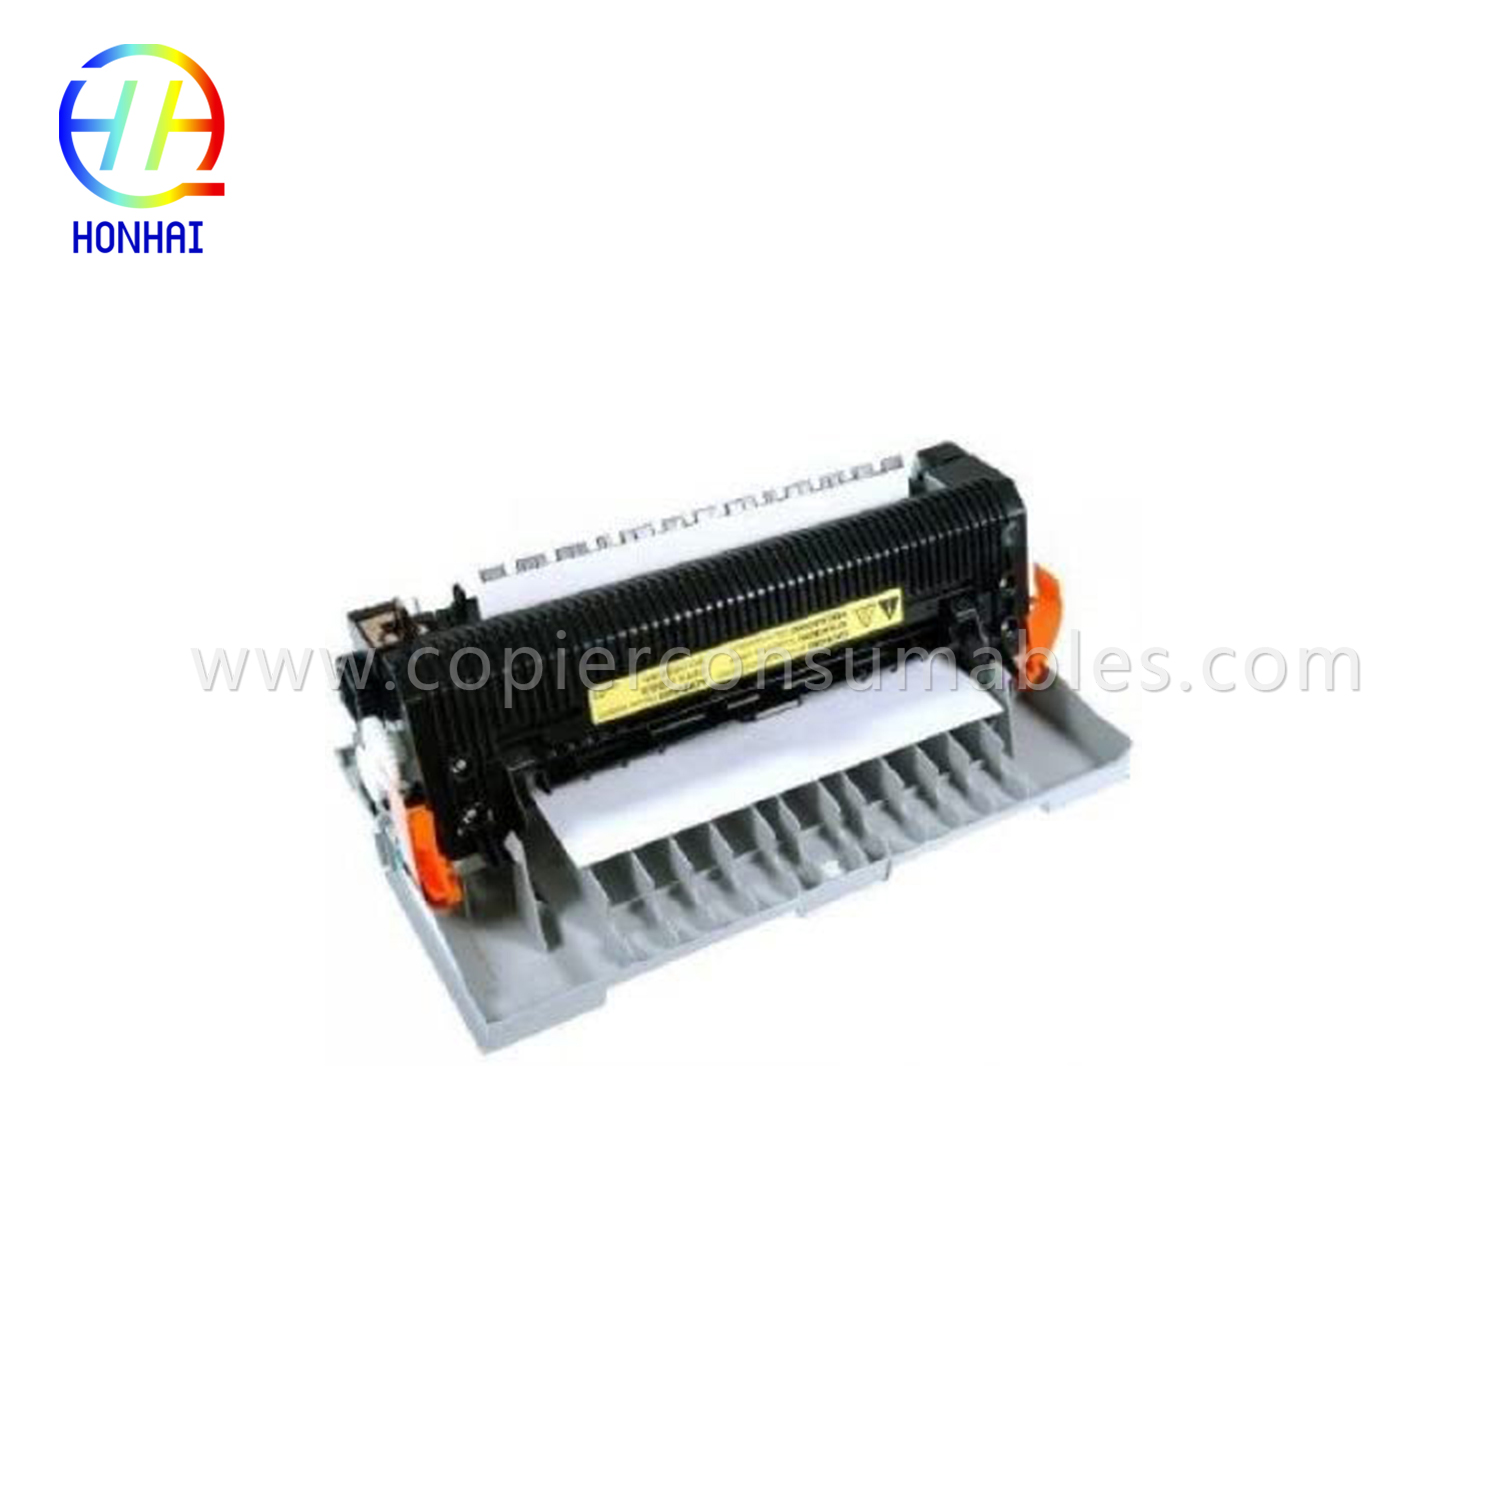 Fuser Assembly for HP Color Laserjet 2820 2830 2840 (RG5-7602-070CN RG5-7602-000CN)